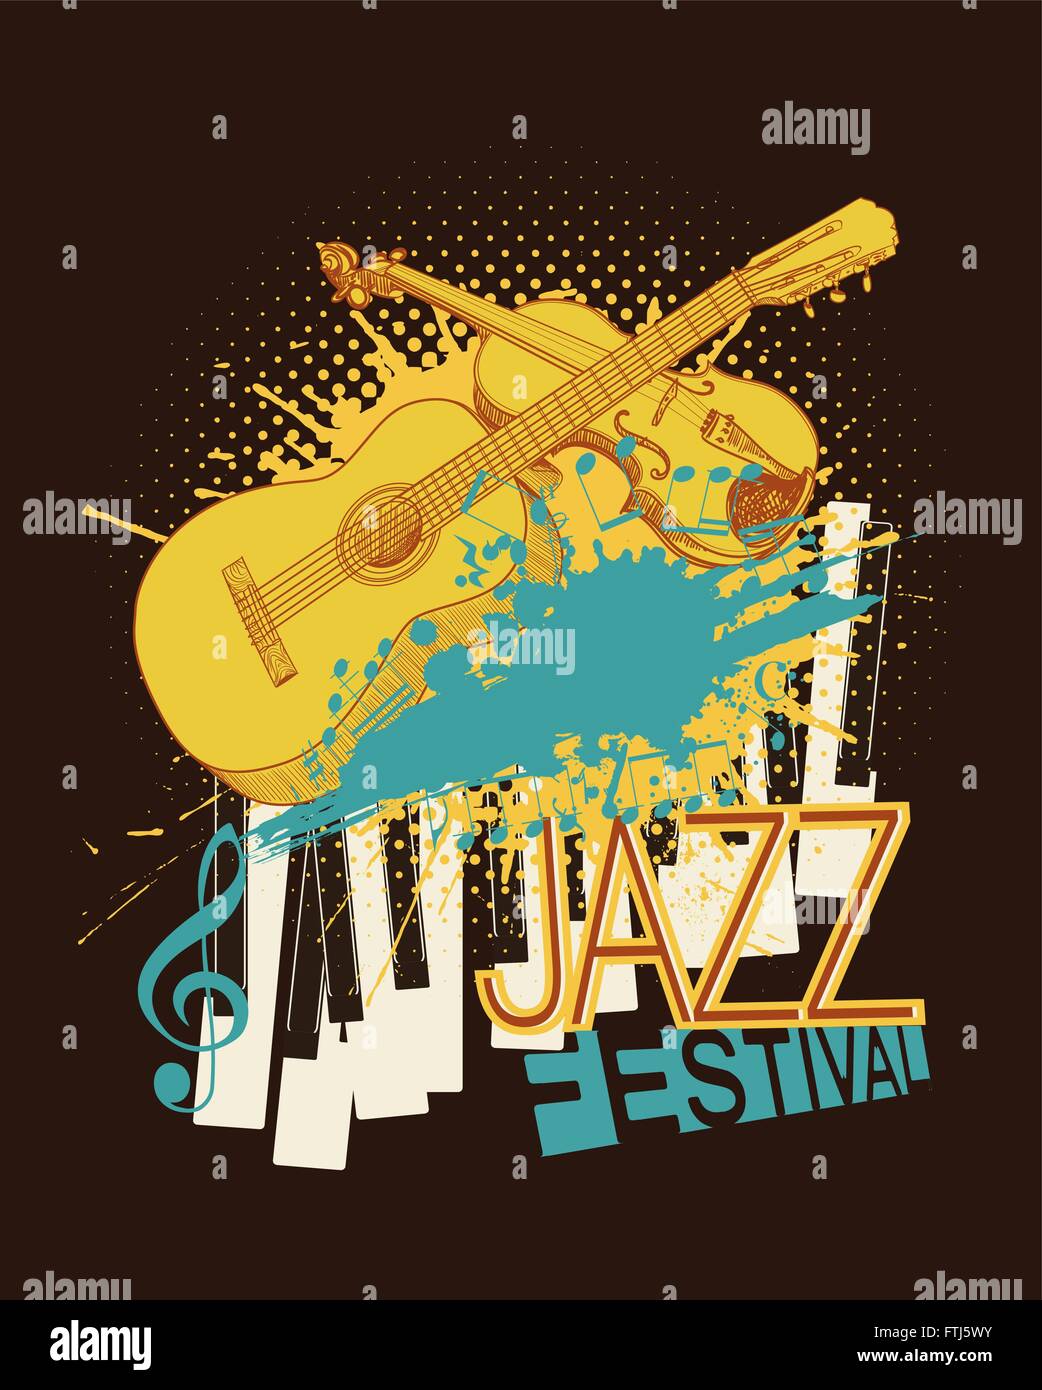 Jazz-Musik-Festival-Plakat mit Violine, Piano-Tasten und Gitarre Skizzen auf Halbton Hintergrund mit Farbe blots. Vektor Stock Vektor